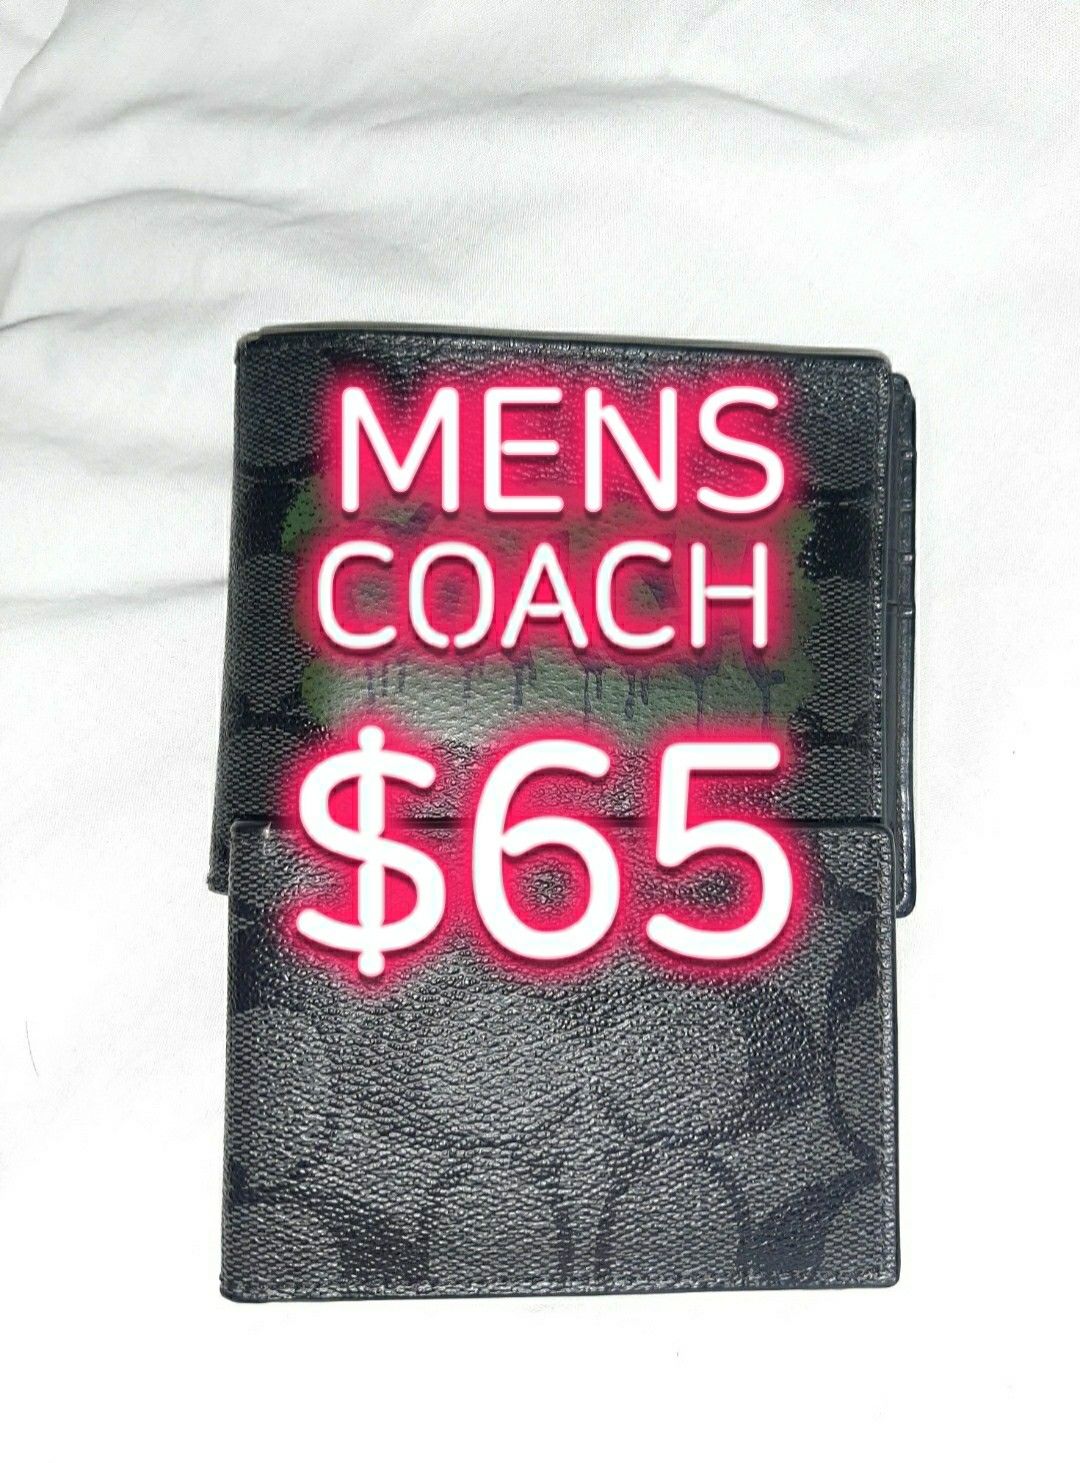 Authentic mens coach wallet